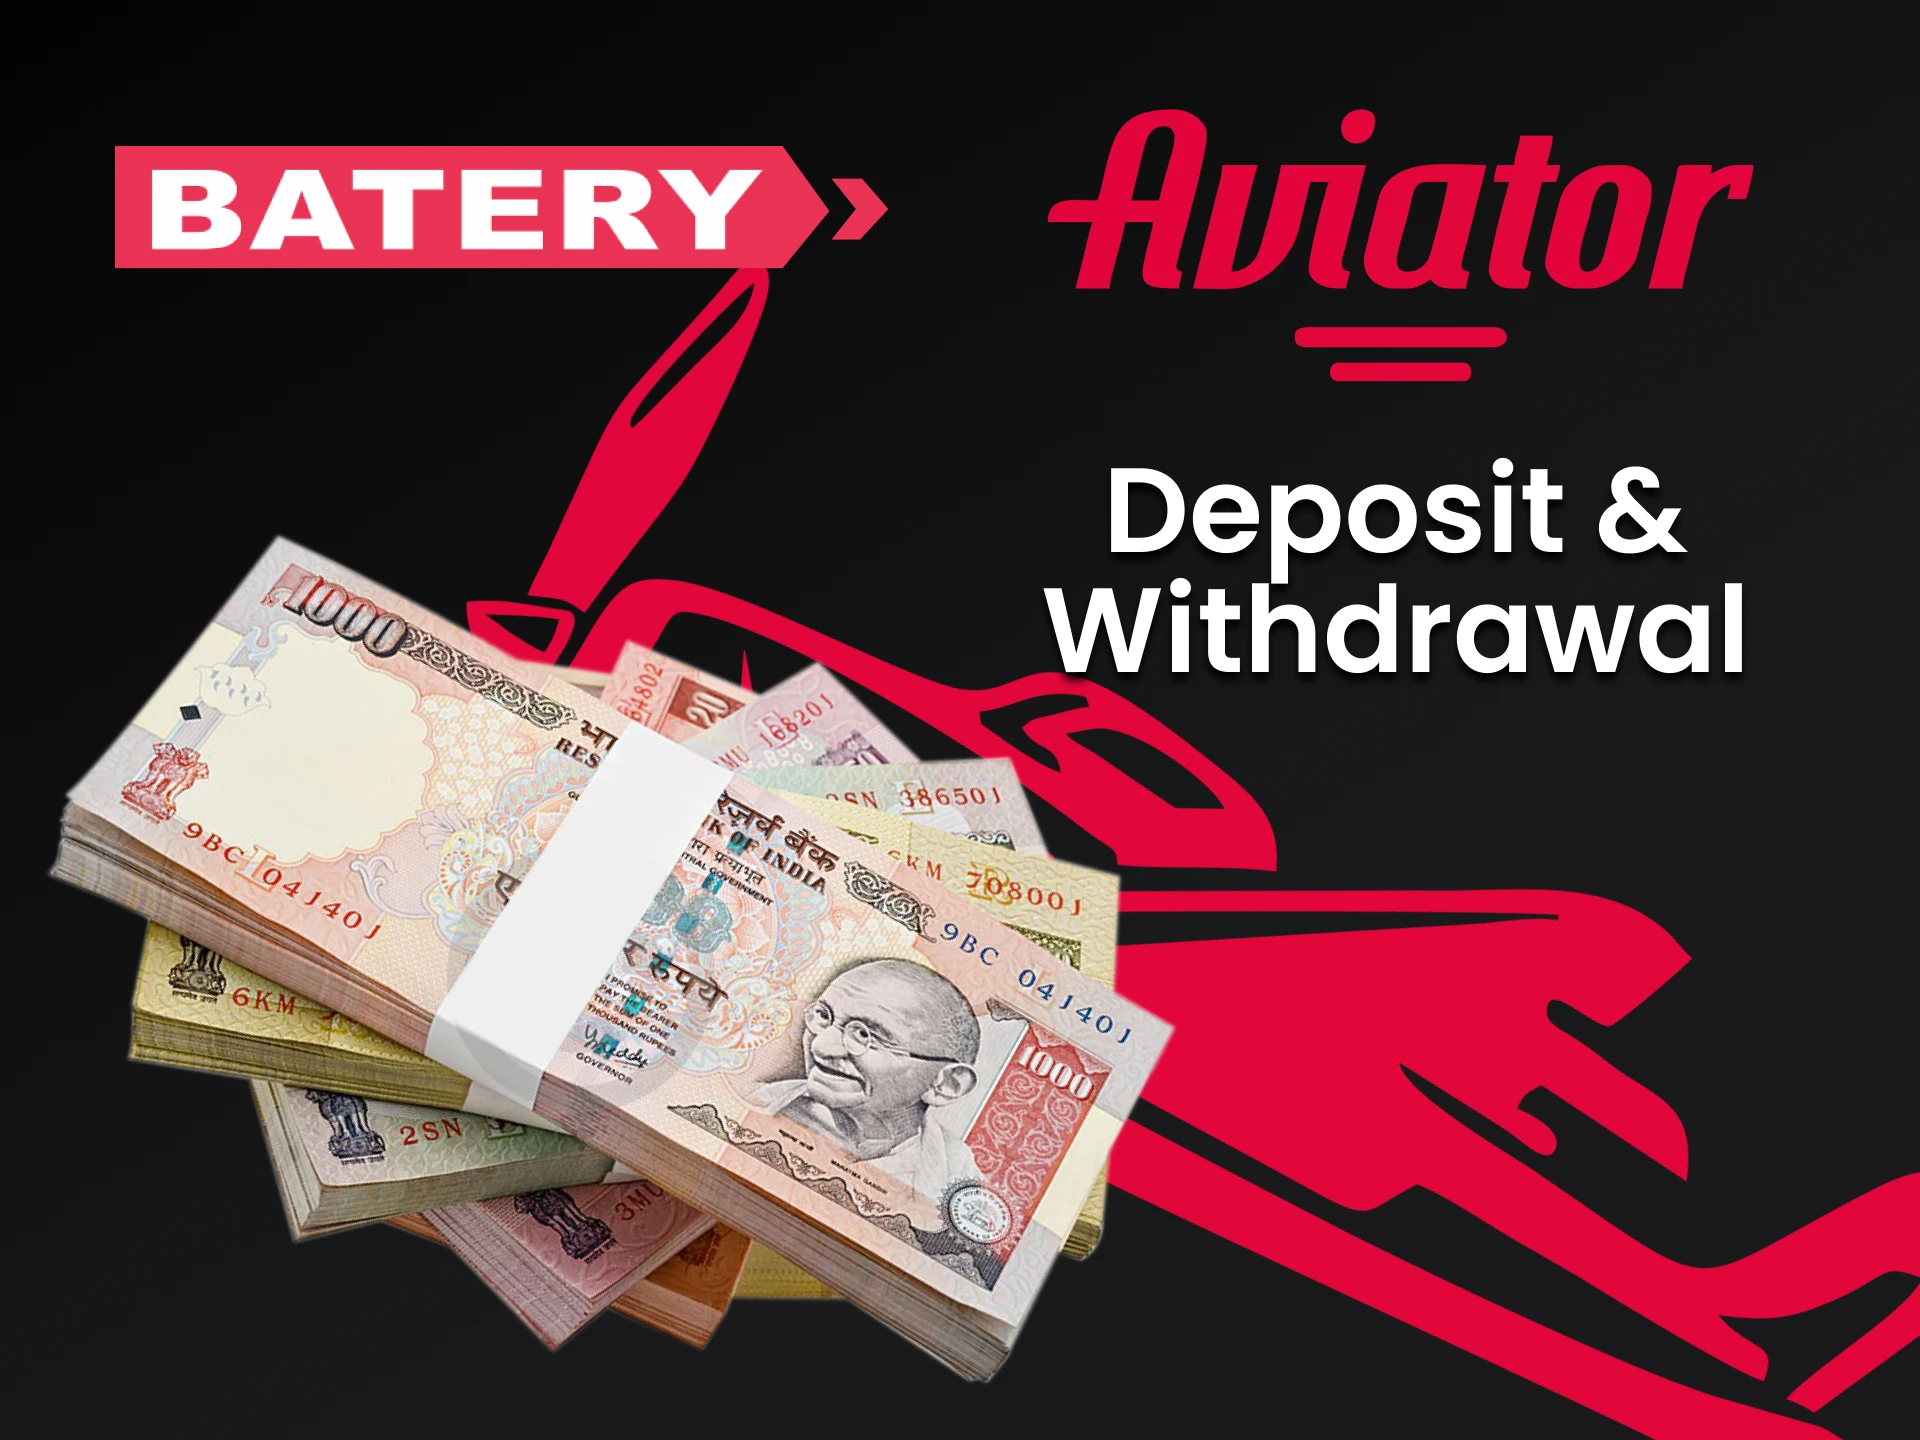 Use o método de transação conveniente da Batery for Aviator.